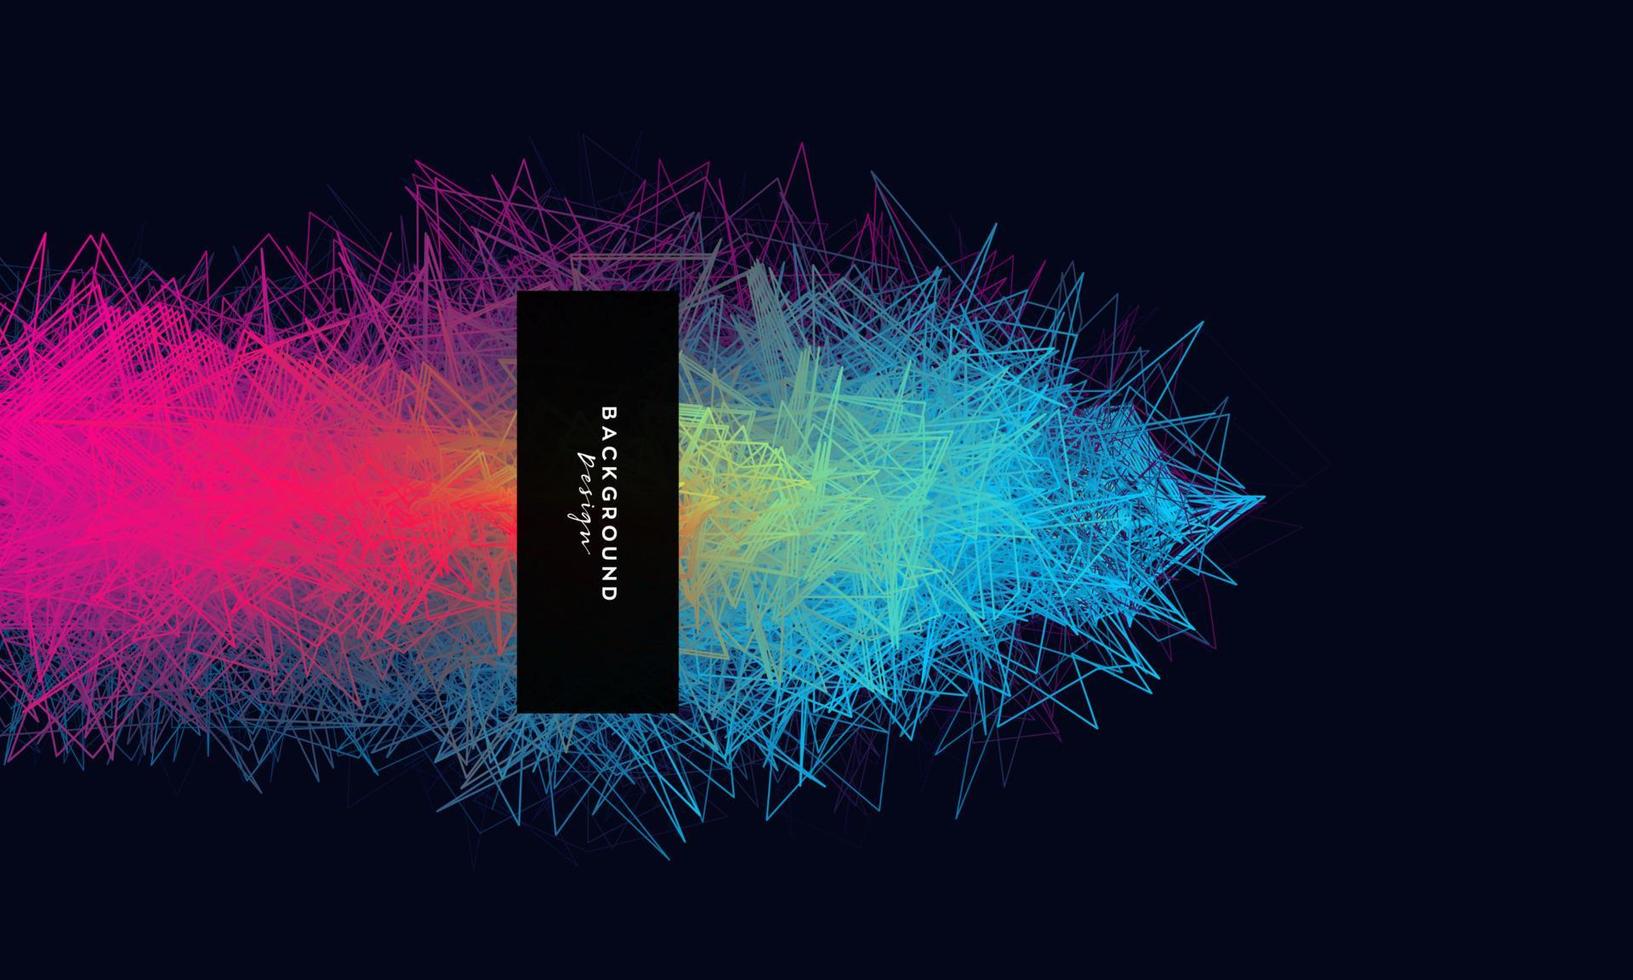 Fondo conceptual colorido caos 3d. onda de línea de garabatos creativos abstractos. Ilustración de cero vector moderno.